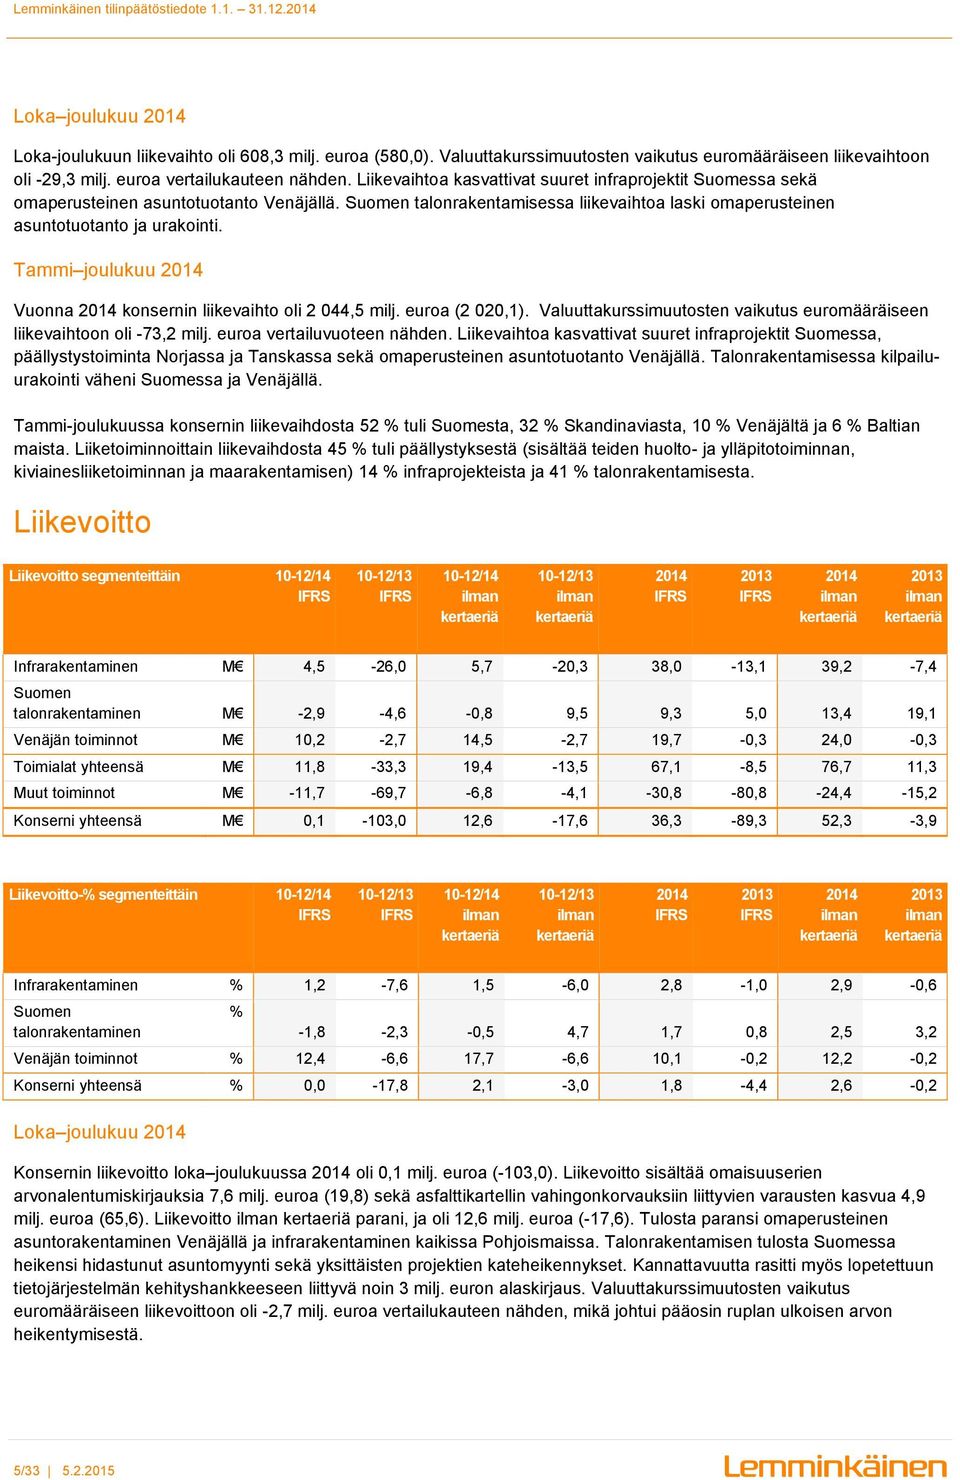 Tammi joulukuu 2014 Vuonna 2014 konsernin liikevaihto oli 2 044,5 milj. euroa (2 020,1). Valuuttakurssimuutosten vaikutus euromääräiseen liikevaihtoon oli -73,2 milj. euroa vertailuvuoteen nähden.